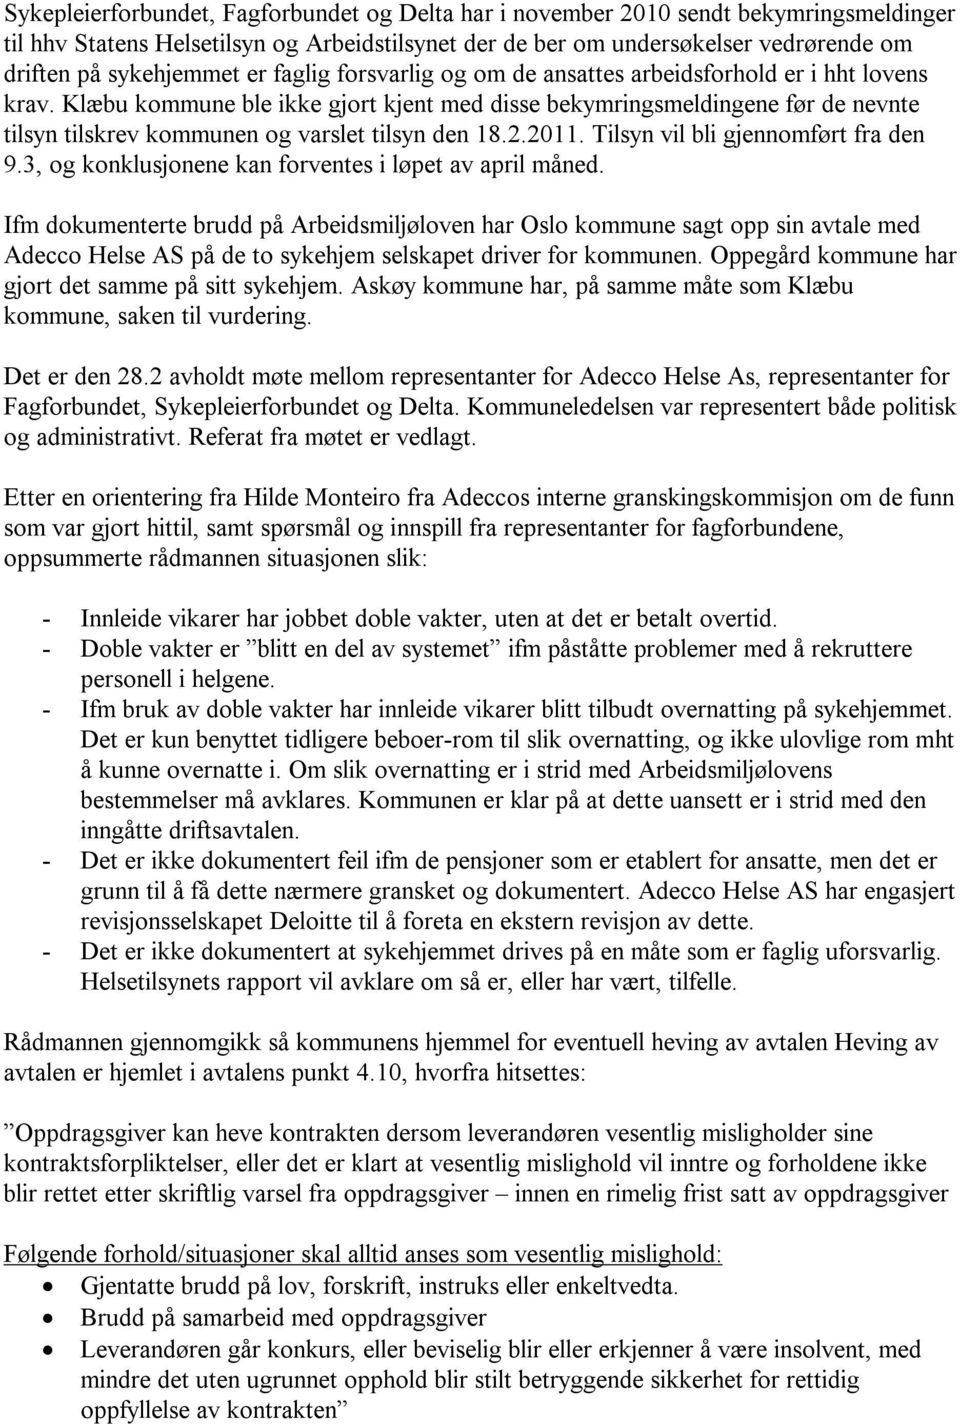 Klæbu kommune ble ikke gjort kjent med disse bekymringsmeldingene før de nevnte tilsyn tilskrev kommunen og varslet tilsyn den 18.2.2011. Tilsyn vil bli gjennomført fra den 9.